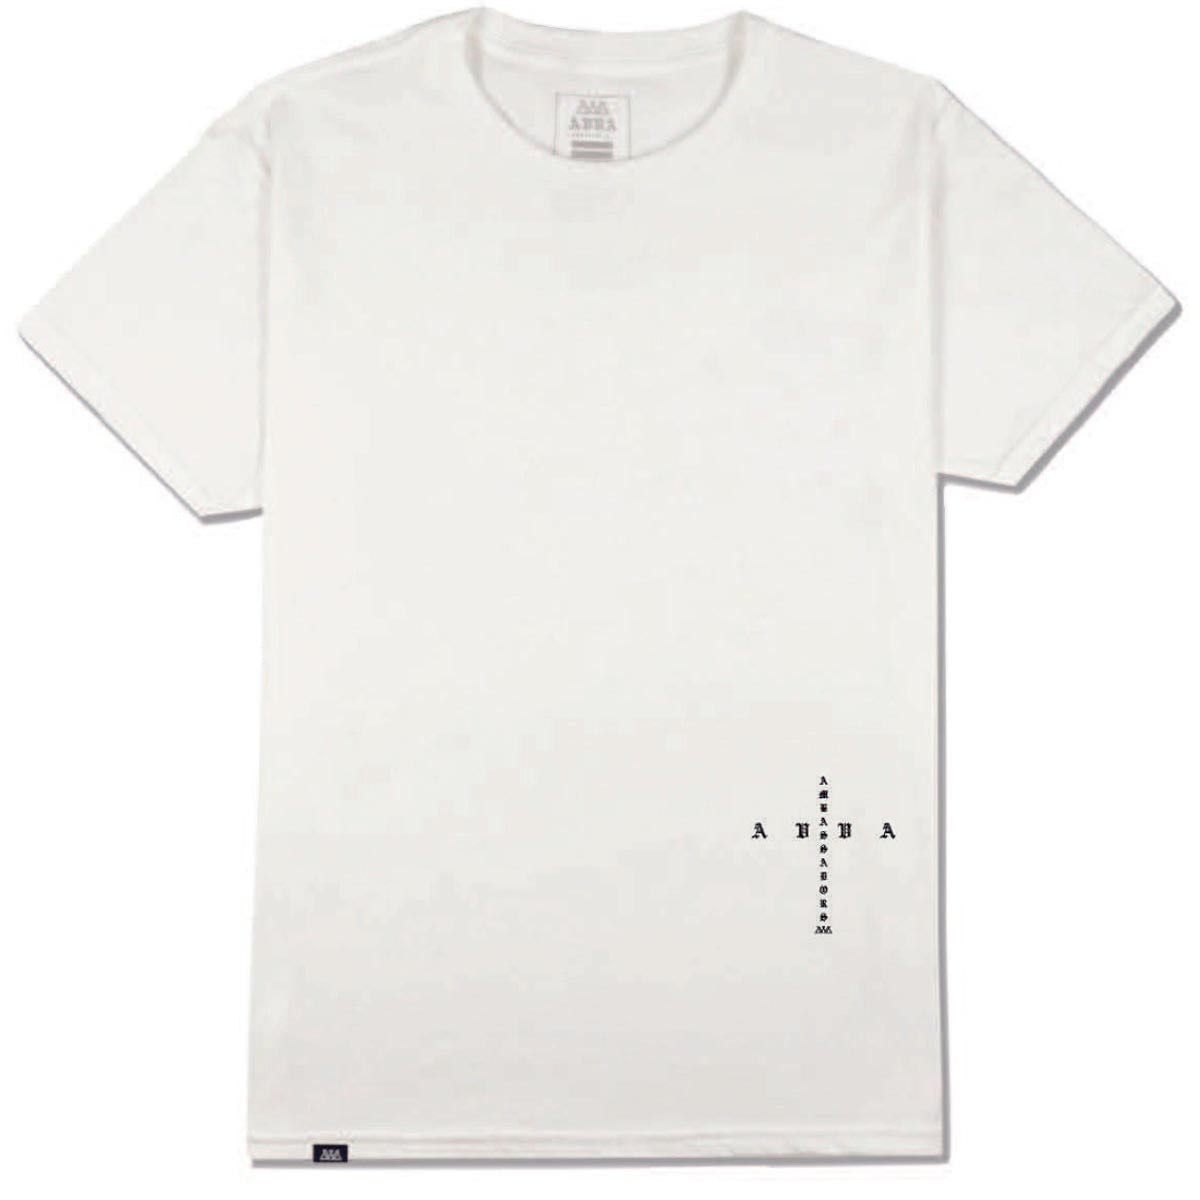 AVVA Mission T-Shirt - White image 1